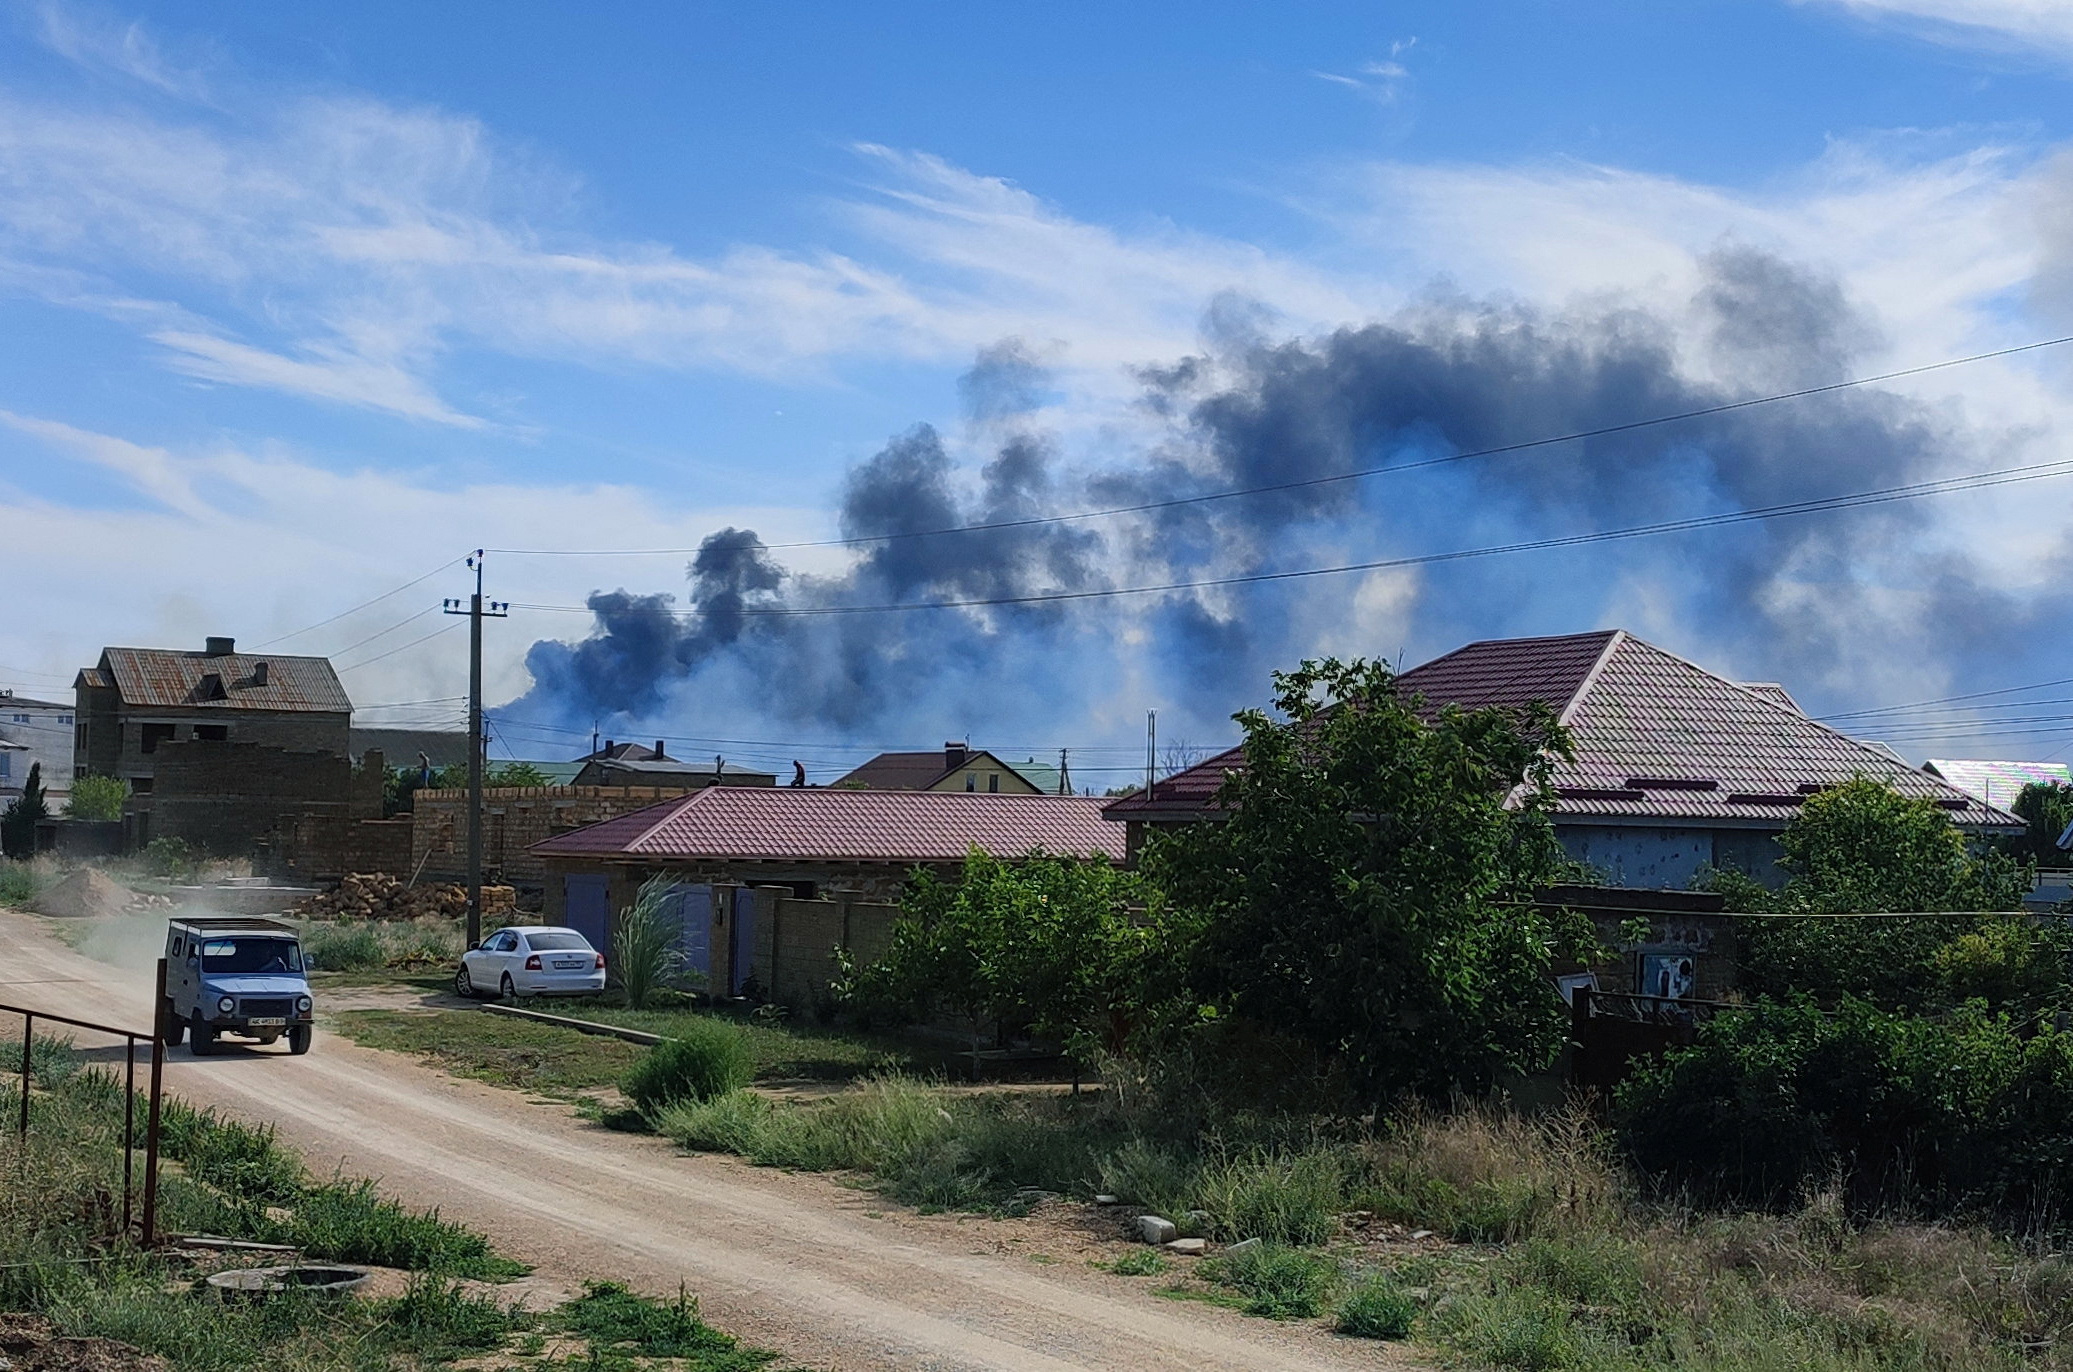 Μόσχα: Οι εκρήξεις στην Κριμαία οφείλονται σε πυρομαχικά της αεροπορικής βάσης, όχι σε επίθεση